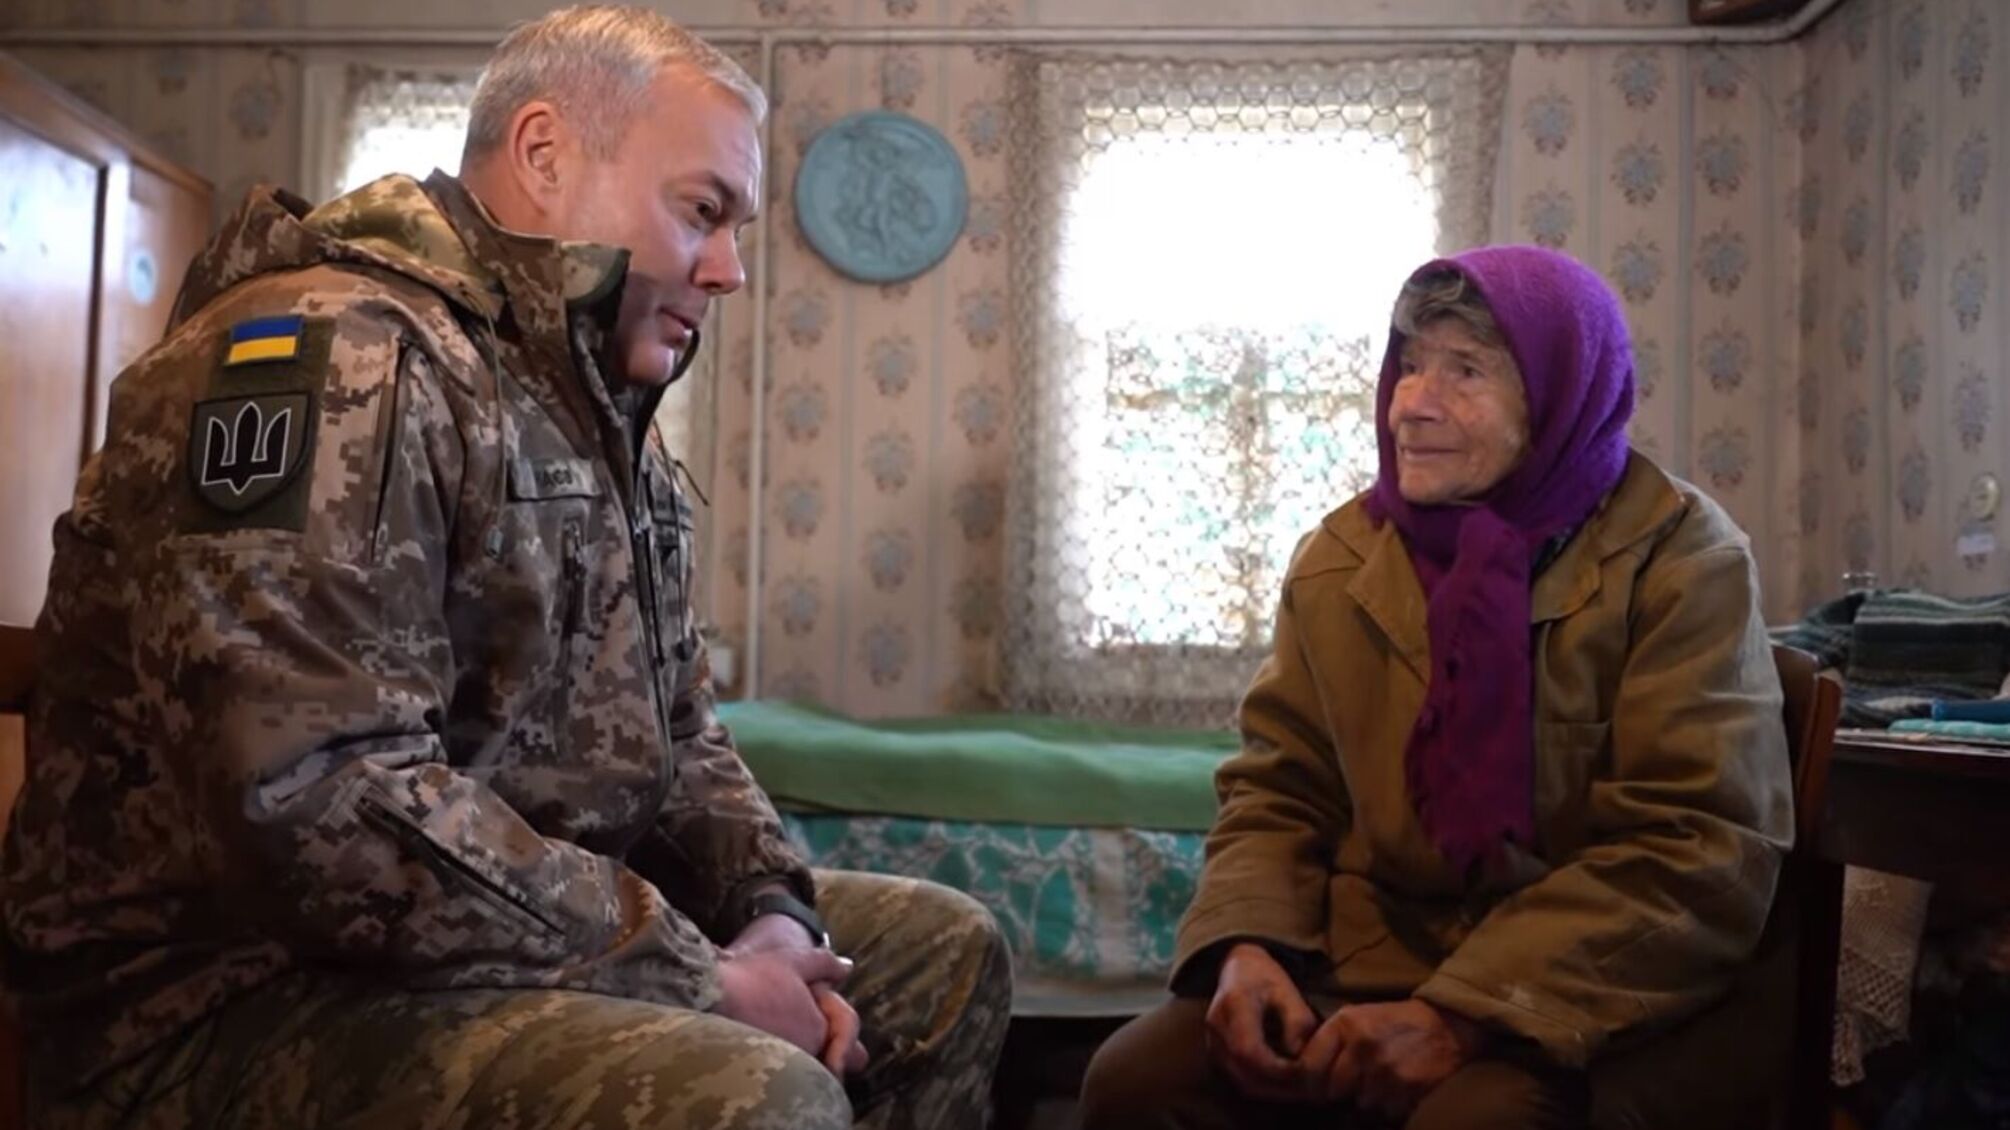 Генерал Наев посетил семью Дуни и Ивана Кузьмича, проживающих в Чернобыльской зоне